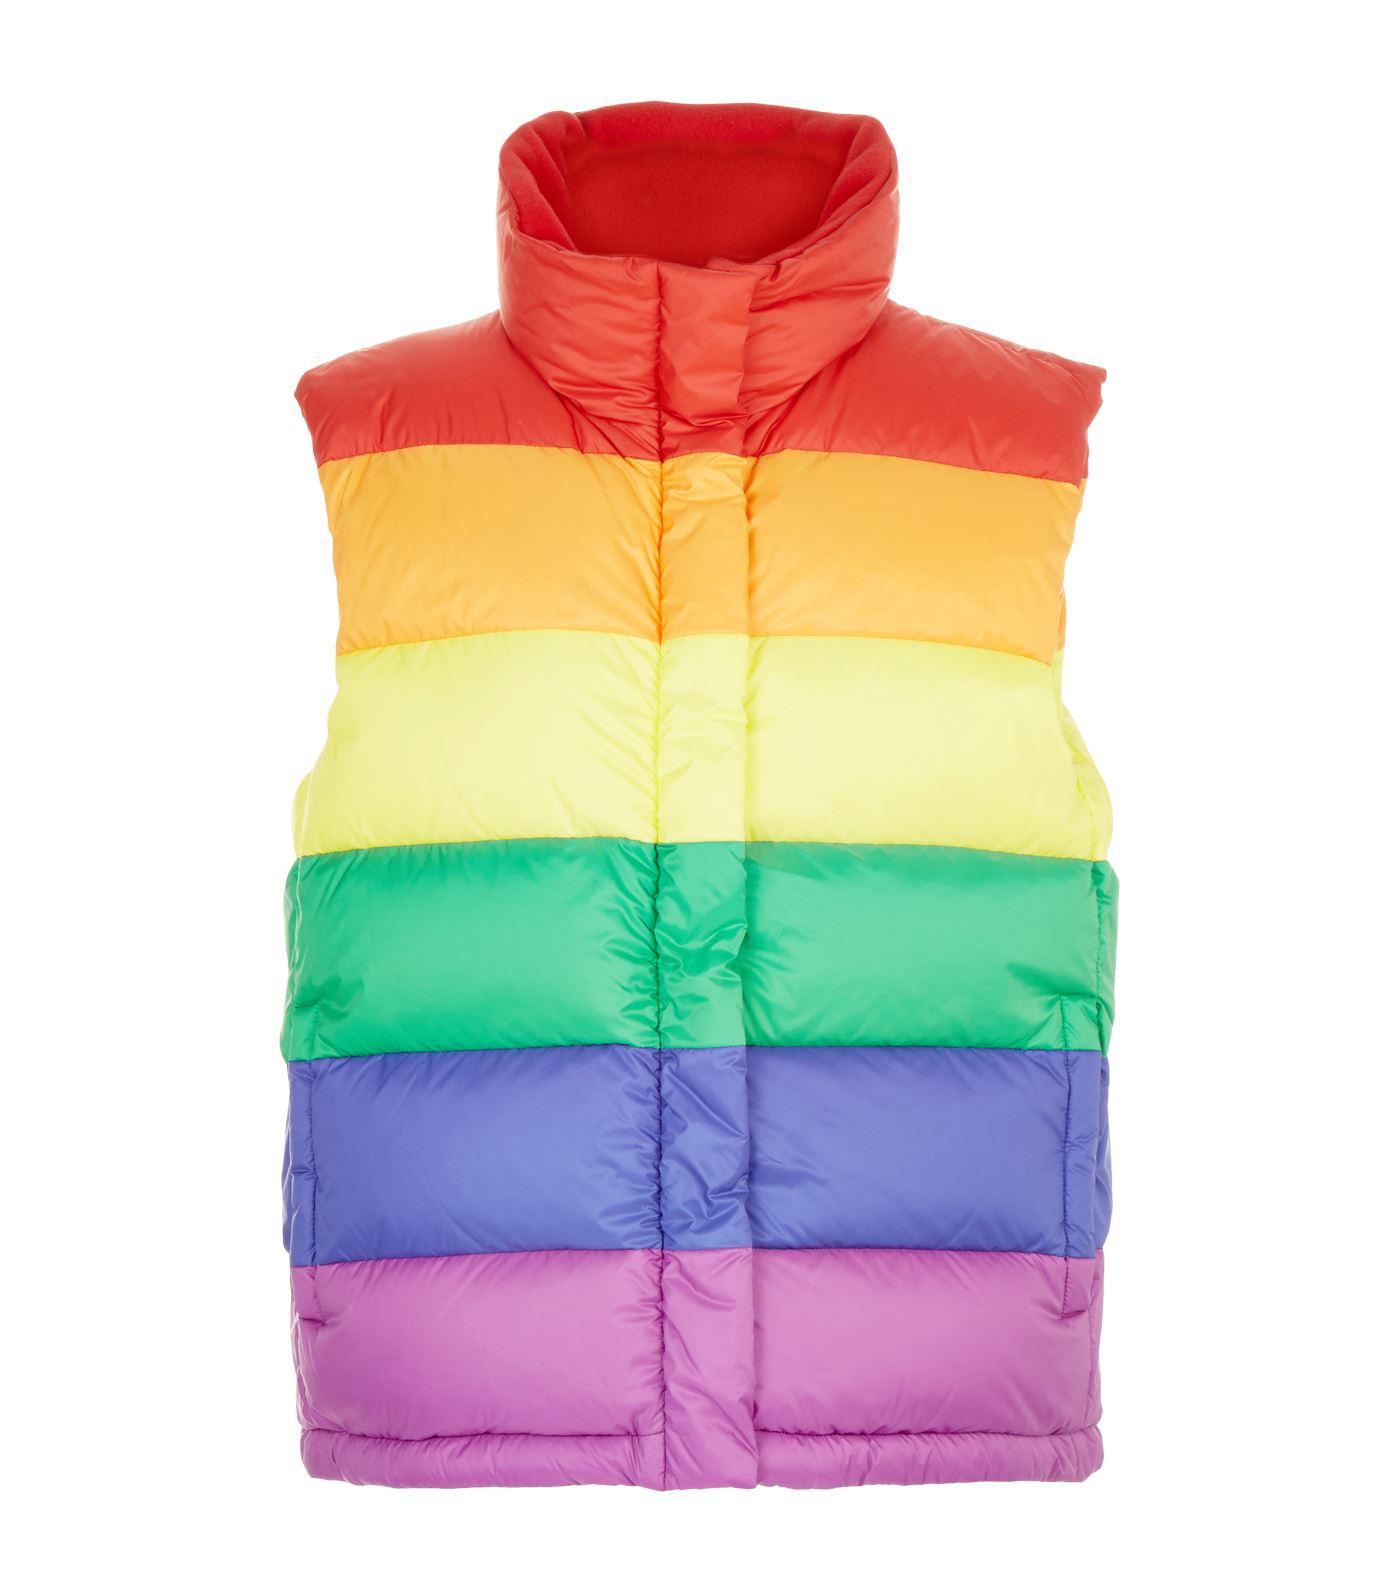 Burberry Fleece Rainbow Puffer Vest in 